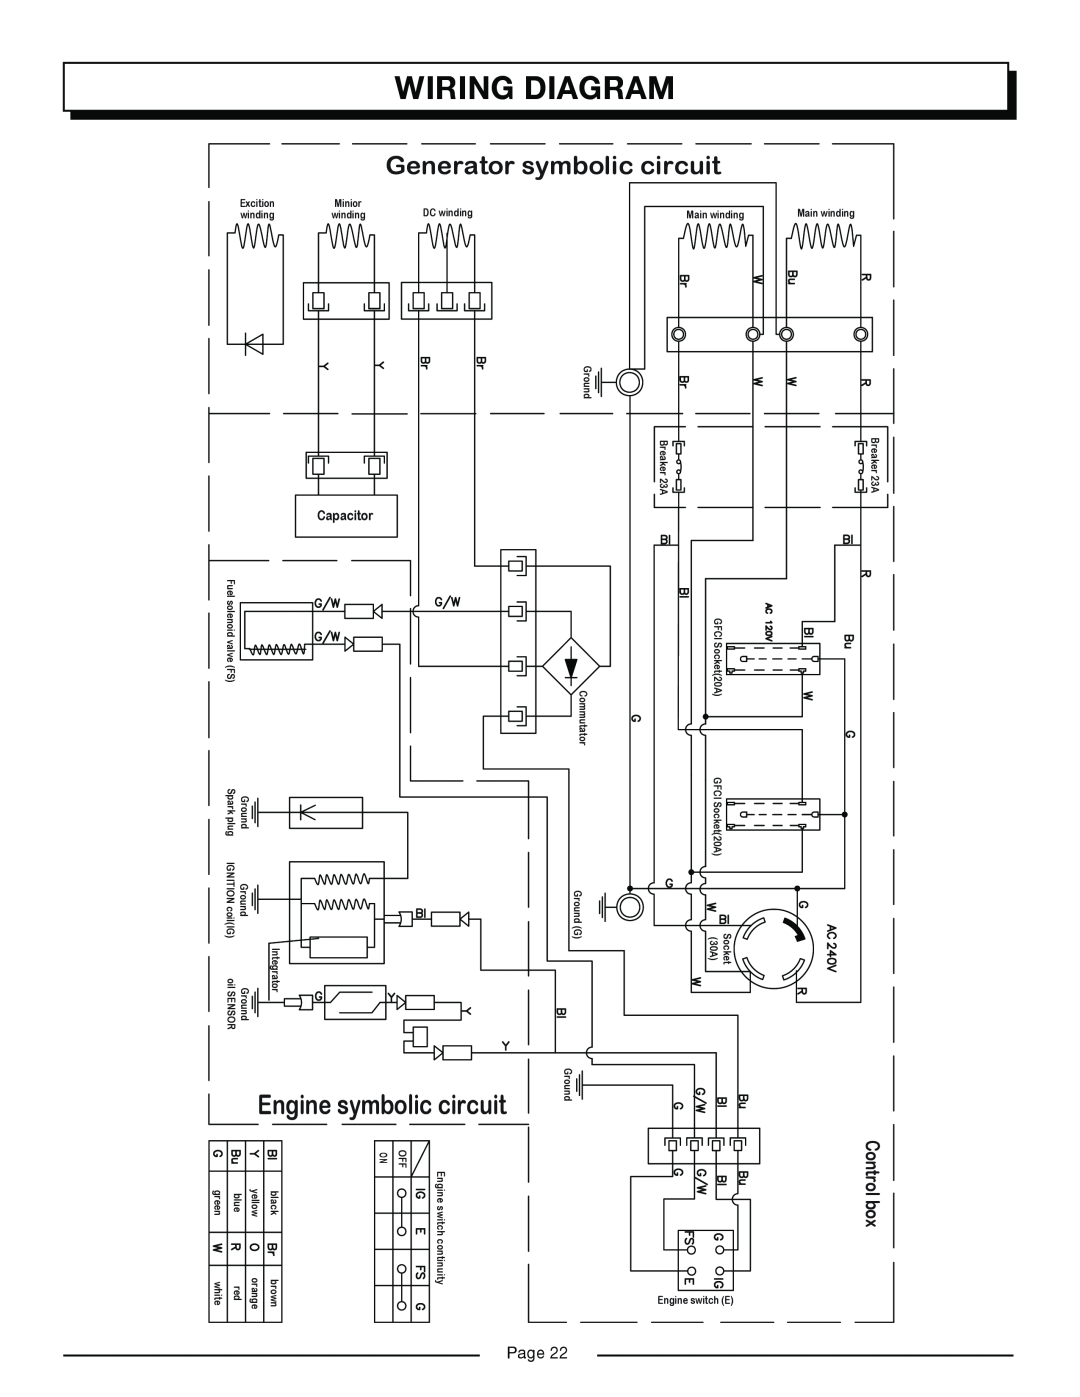 Homelite HG6000 Wiring Diagram, Engine symbolic circuit, Generator symbolic circuit, Control box, Capacitor, Excition 